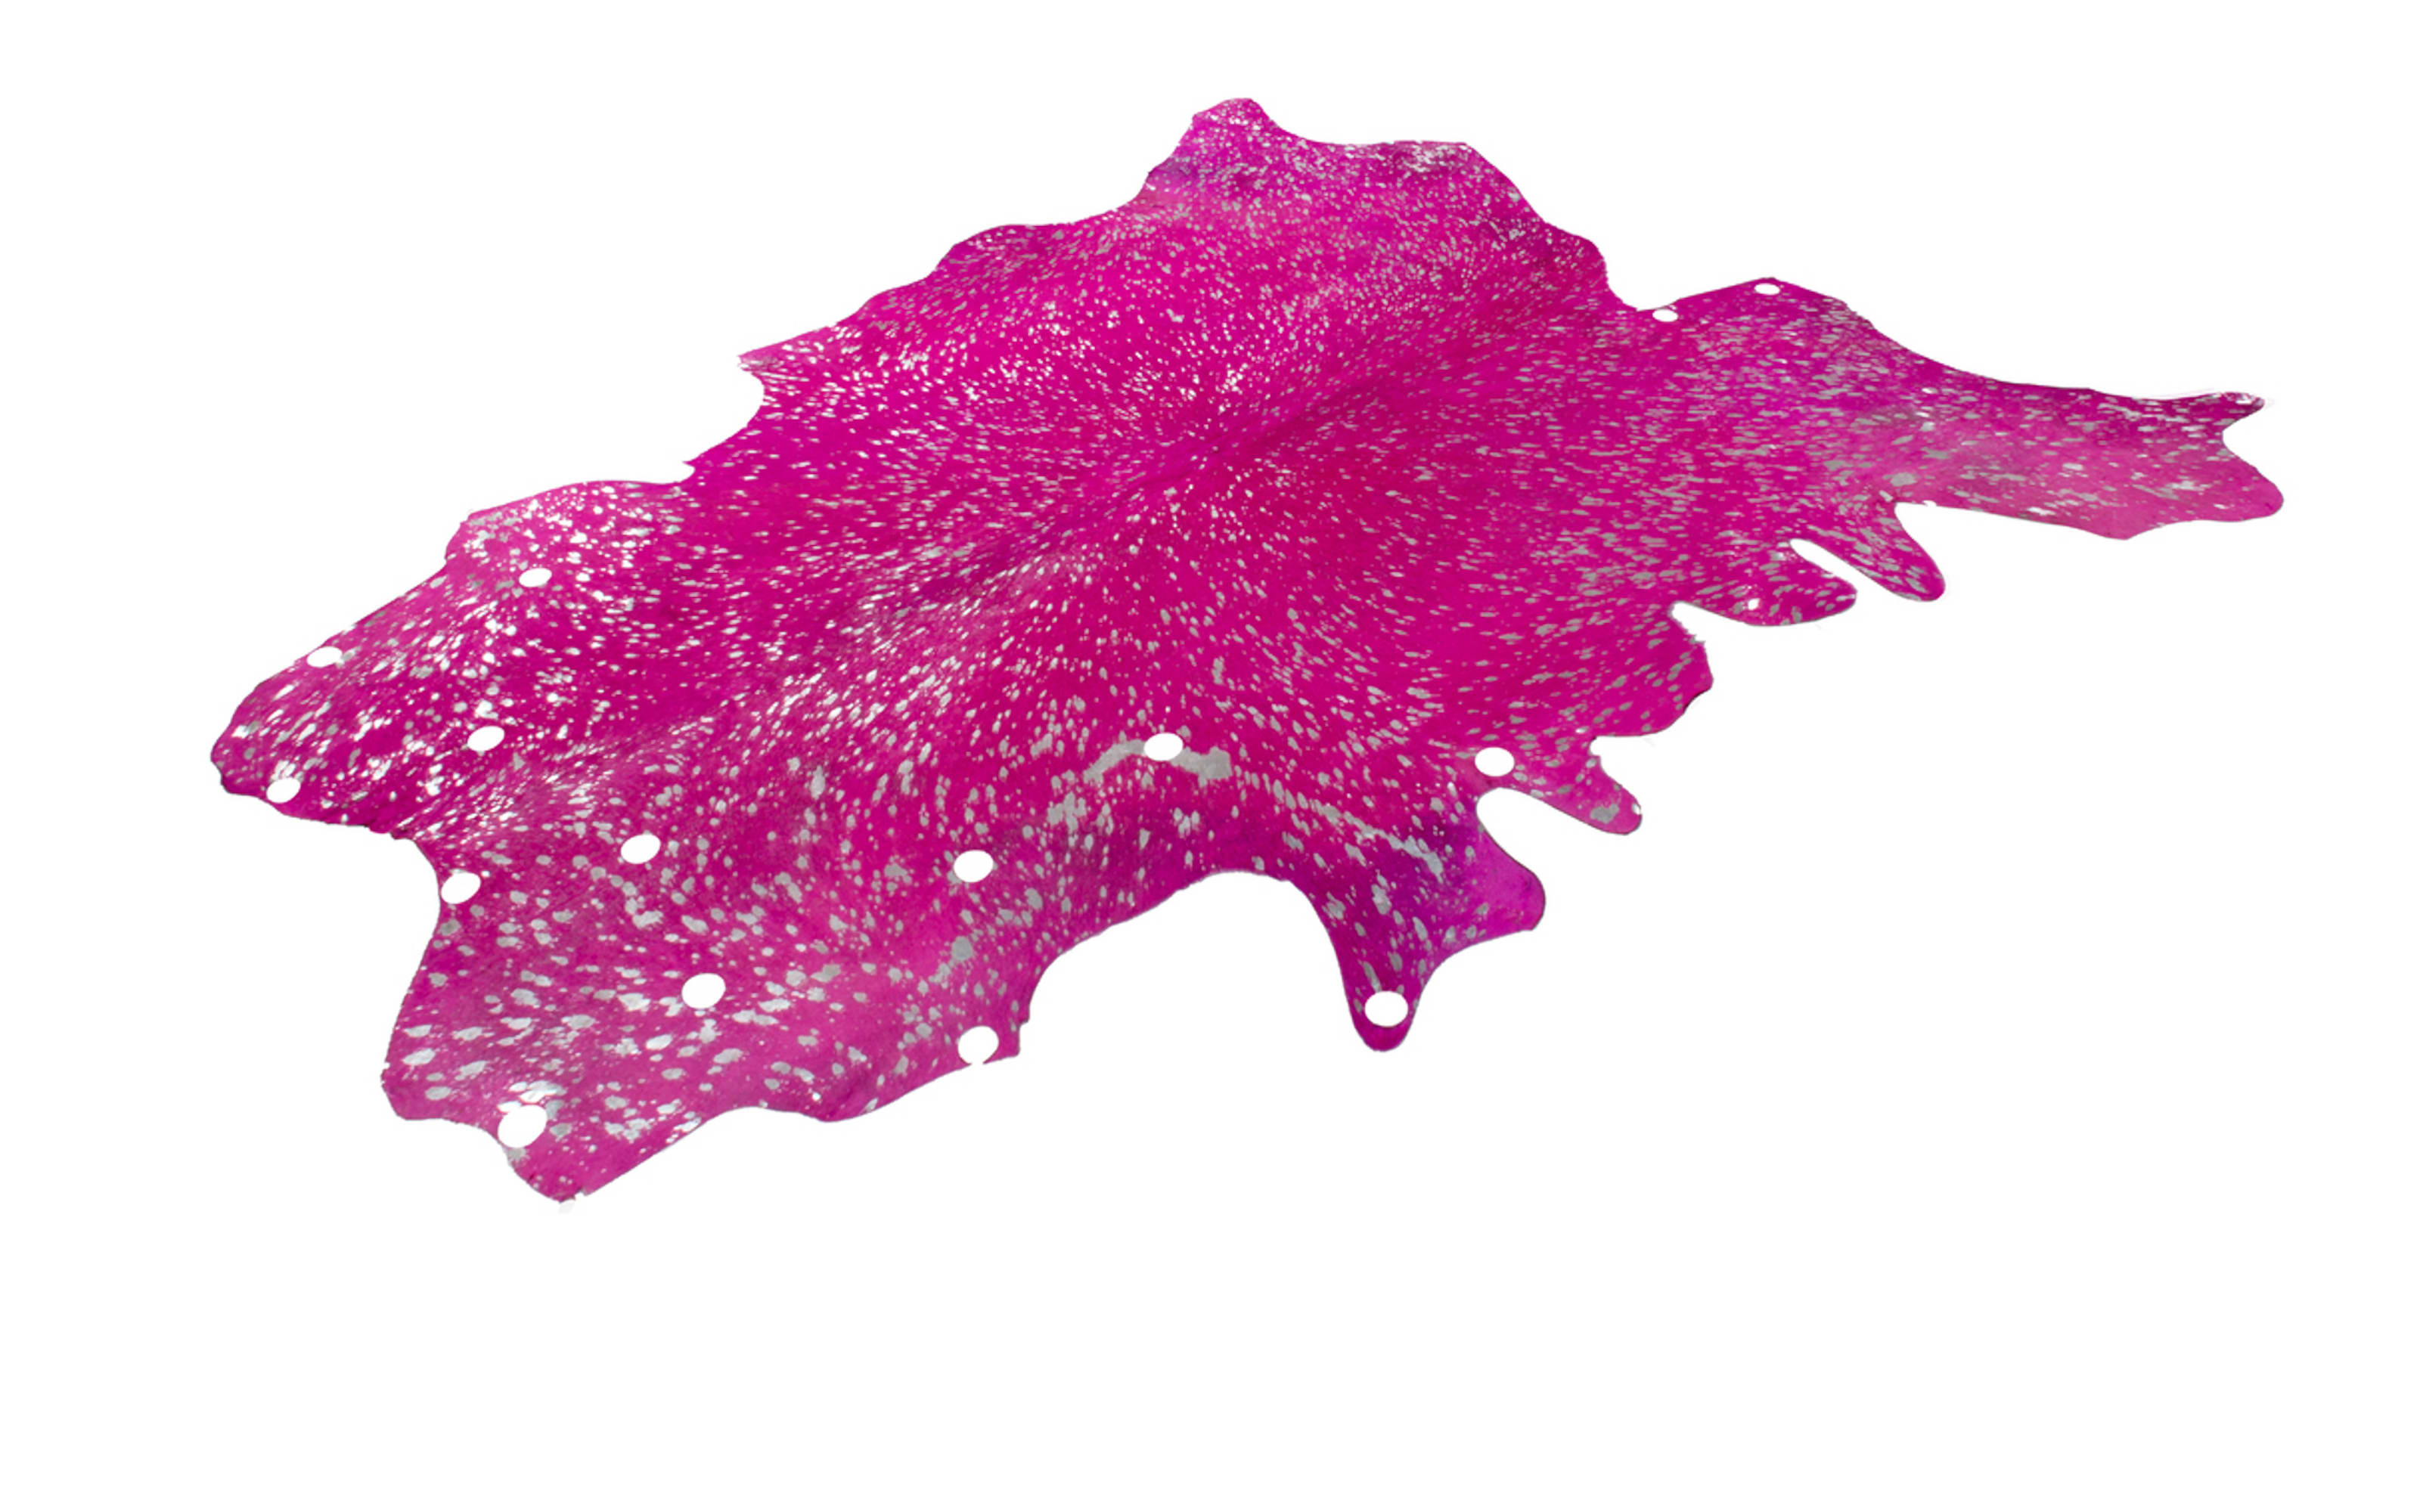 Kuhfellteppich Glam 410 in violett-silber, ca. 2,00 qm